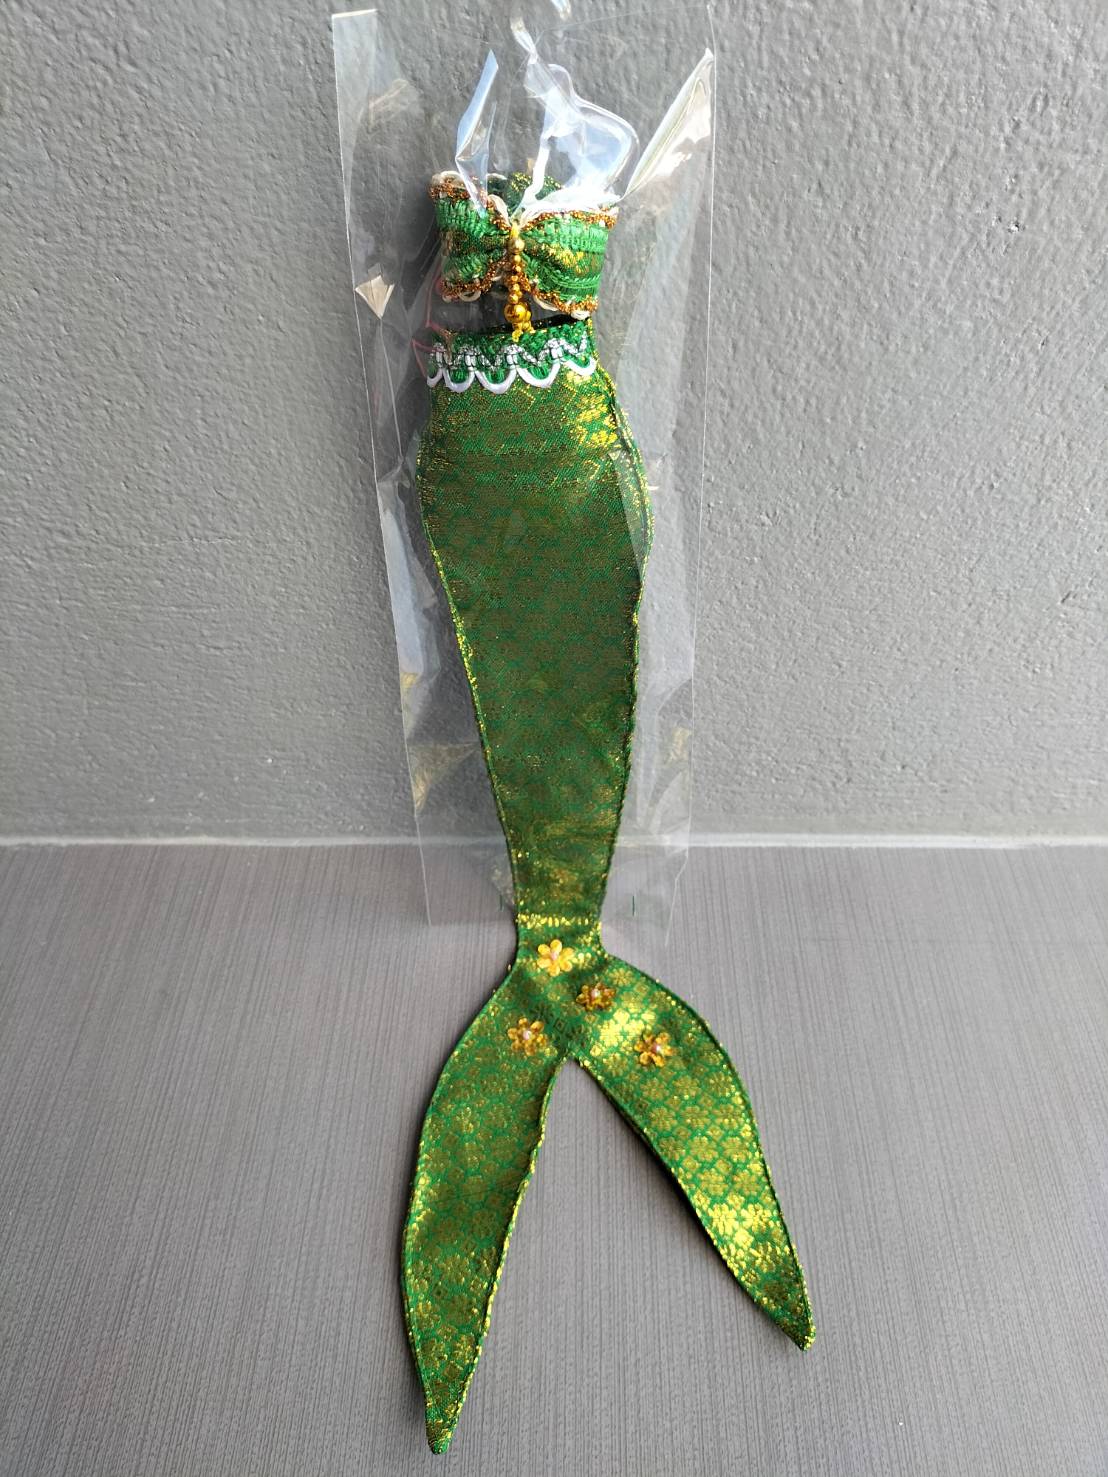 ฺฺBBDOLLชุดนางเงือก ชุดบาร์บี้ ชุดตุ๊กตา เลือกแบบข้างใน สี เขียว สี เขียว